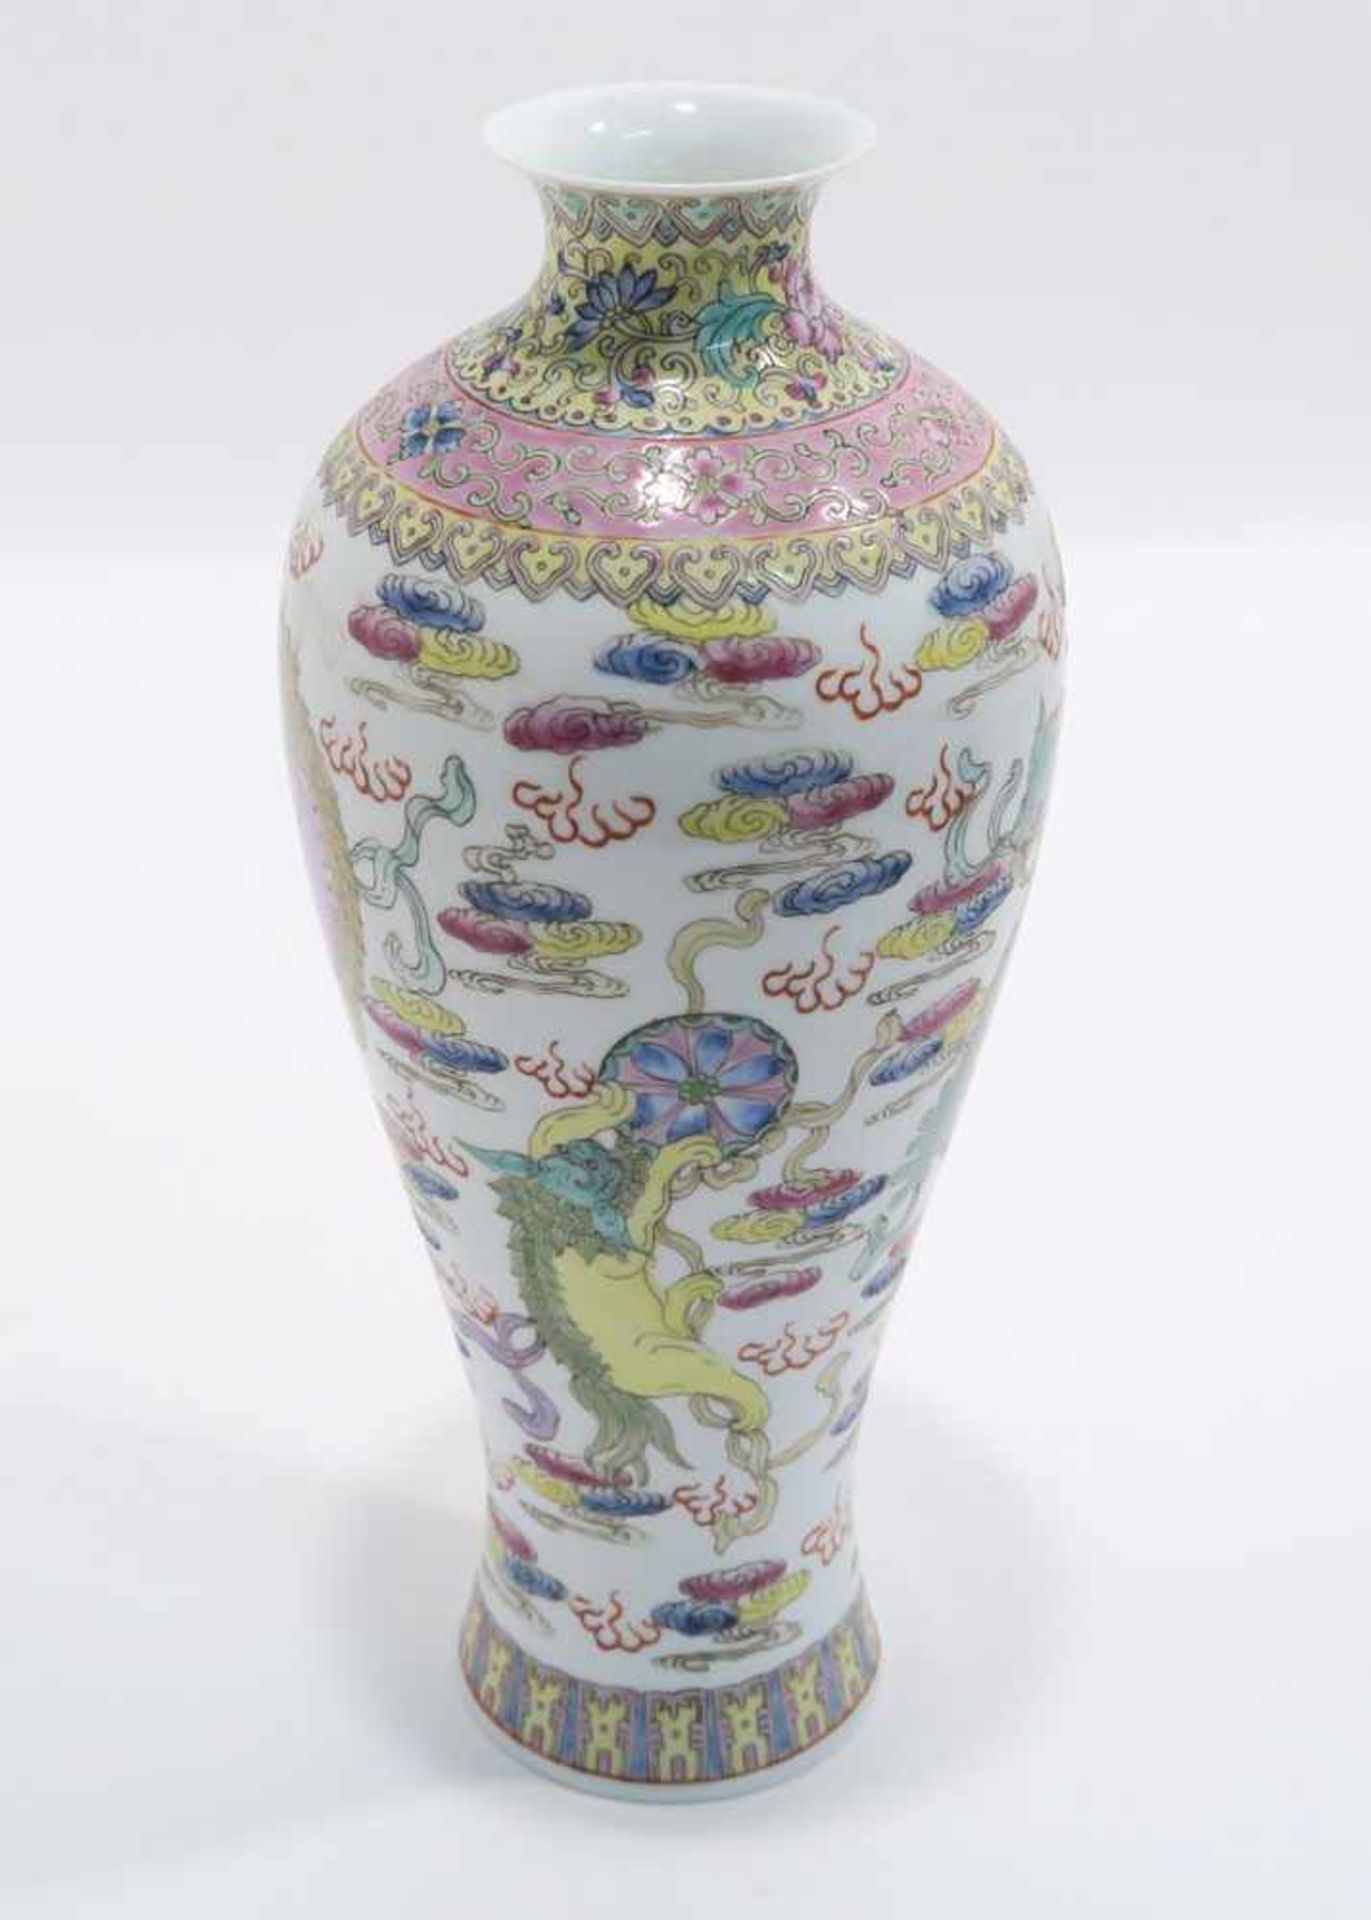 Opiumpfeife / Vase / DeckelgefäßChina. Porzellan, tlw. mit Kupfermontierung. Verschiedene bunte bzw. - Bild 17 aus 21